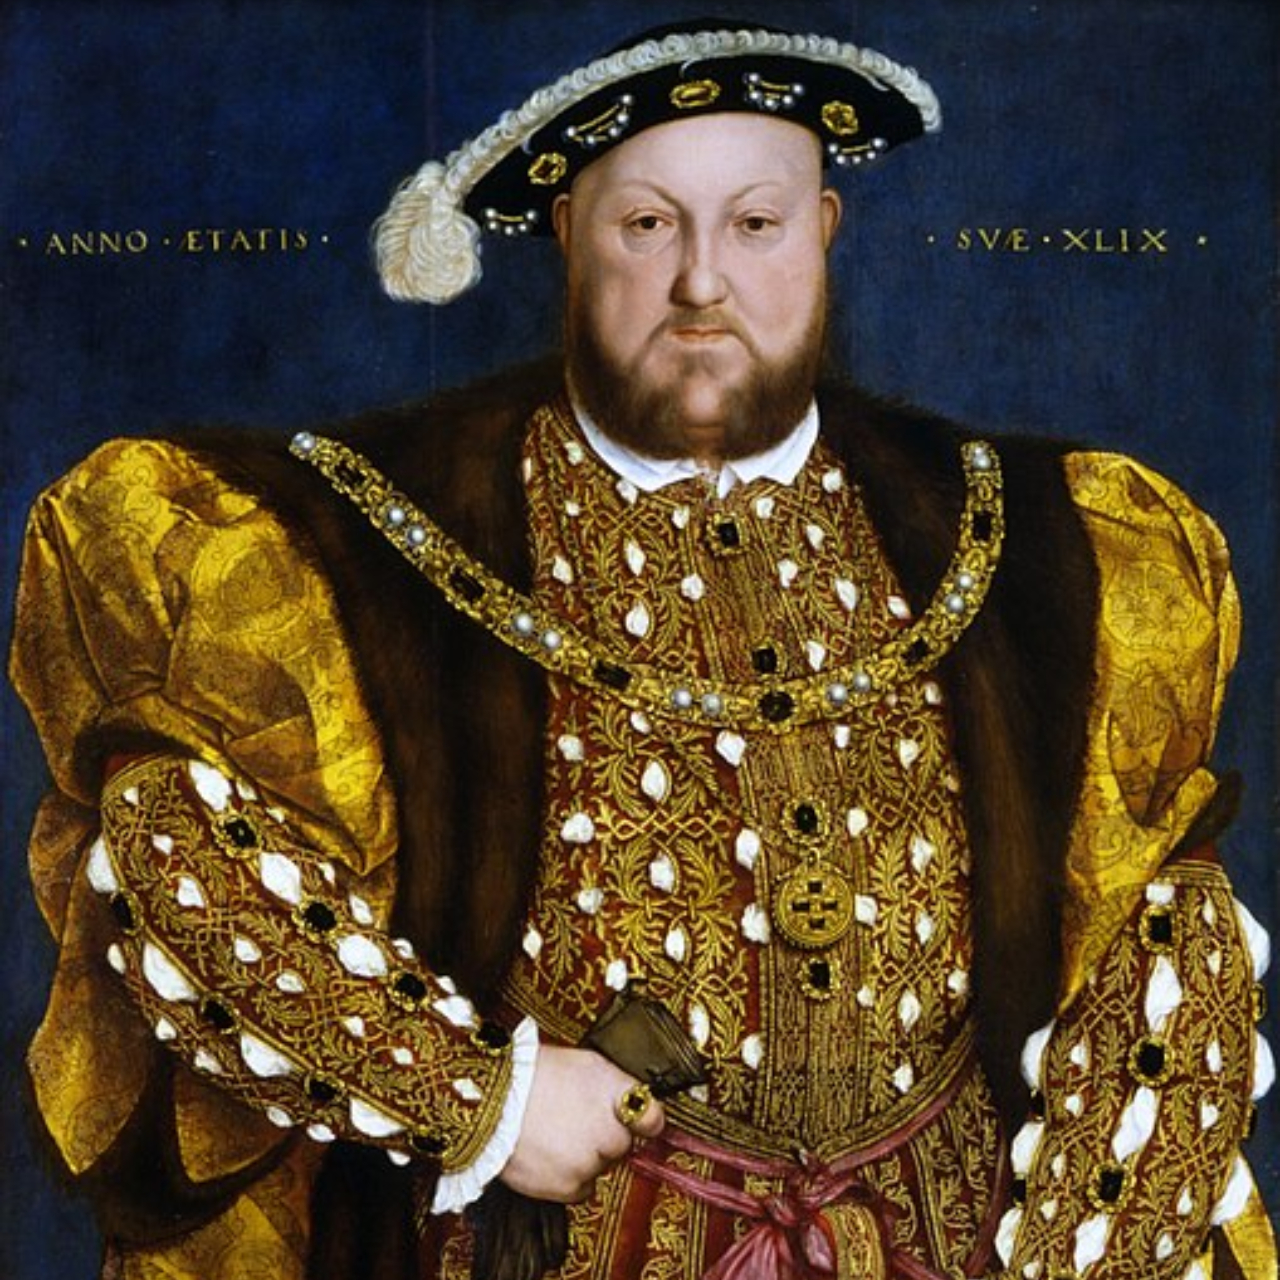 Retrato de Henrique VIII